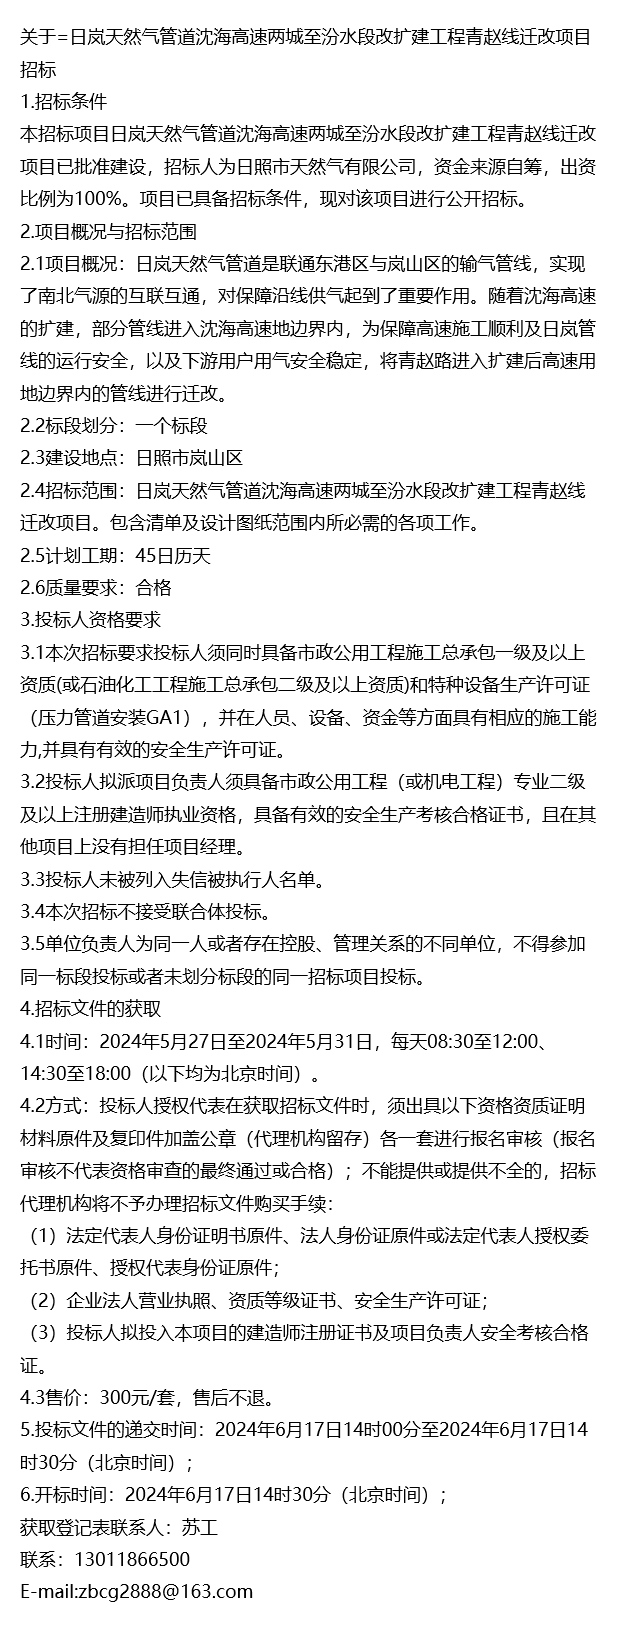 =日岚天然气管道沈海高速两城至汾水段改扩建工程青赵线迁改项目招标